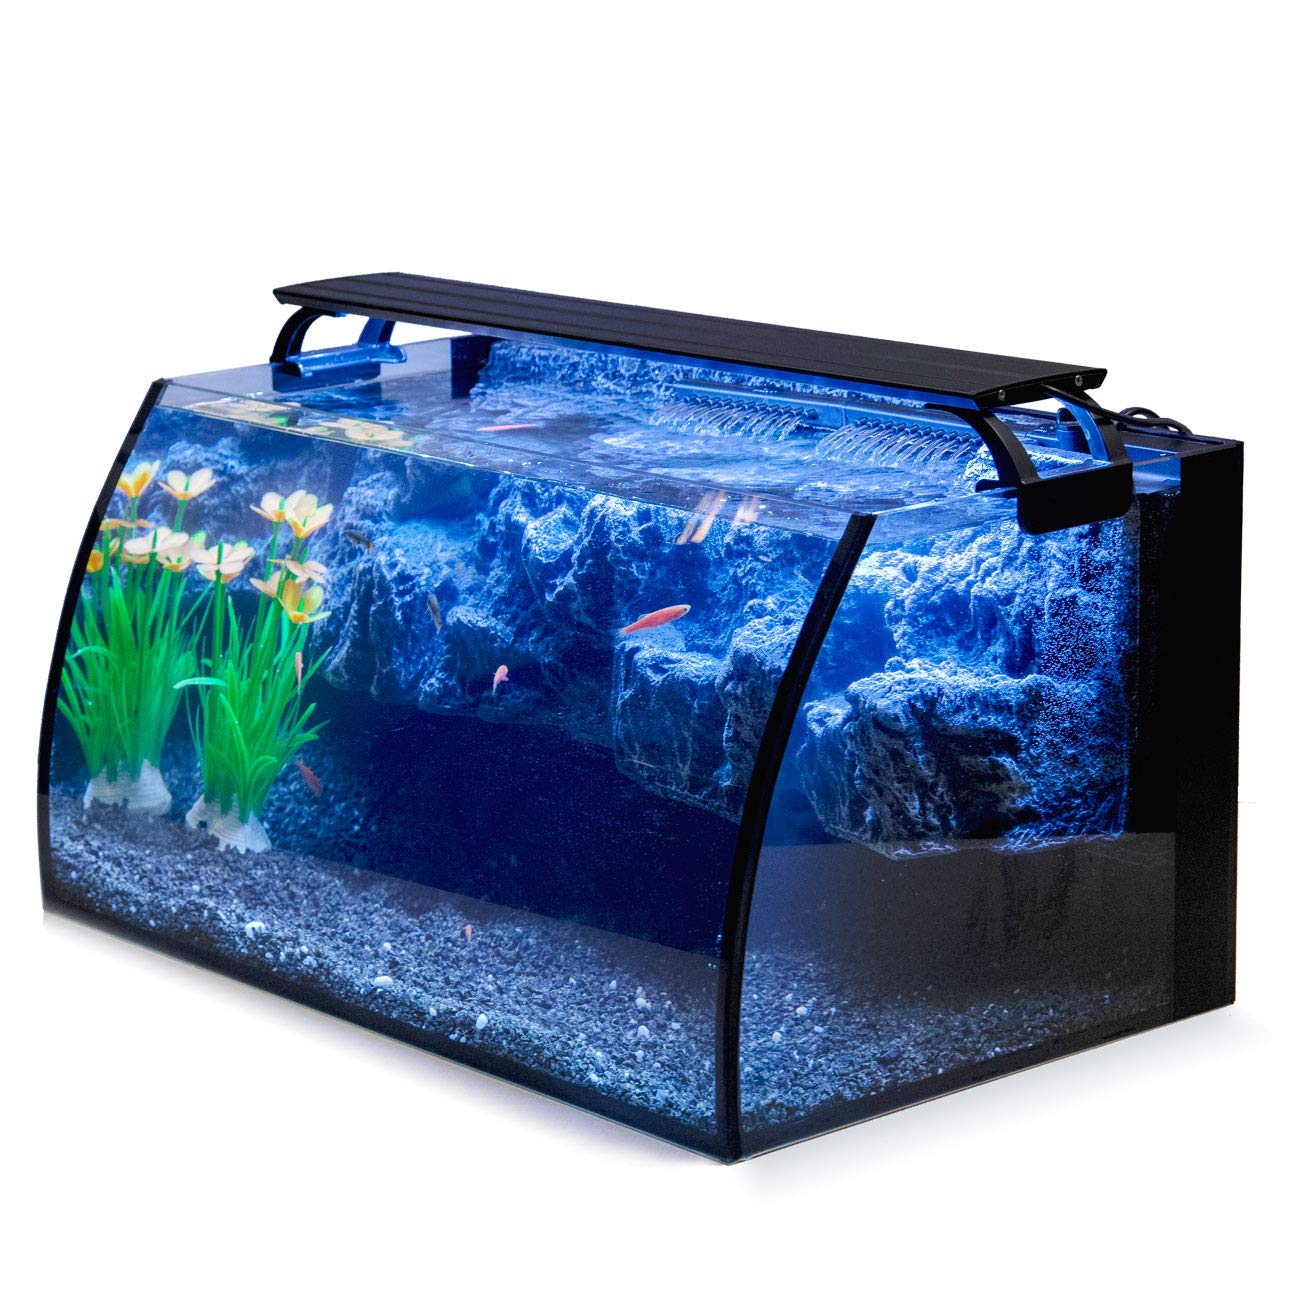 Hygger Horizon 8 Gallon LED Glass Aquarium Kit cho phép bạn tận hưởng vẻ đẹp của thế giới dưới nước thật gần gũi. Với thiết kế đẹp mắt và đầy đủ tiện nghi, bạn sẽ truyền cảm hứng và sự thư giãn cho mọi người xung quanh.